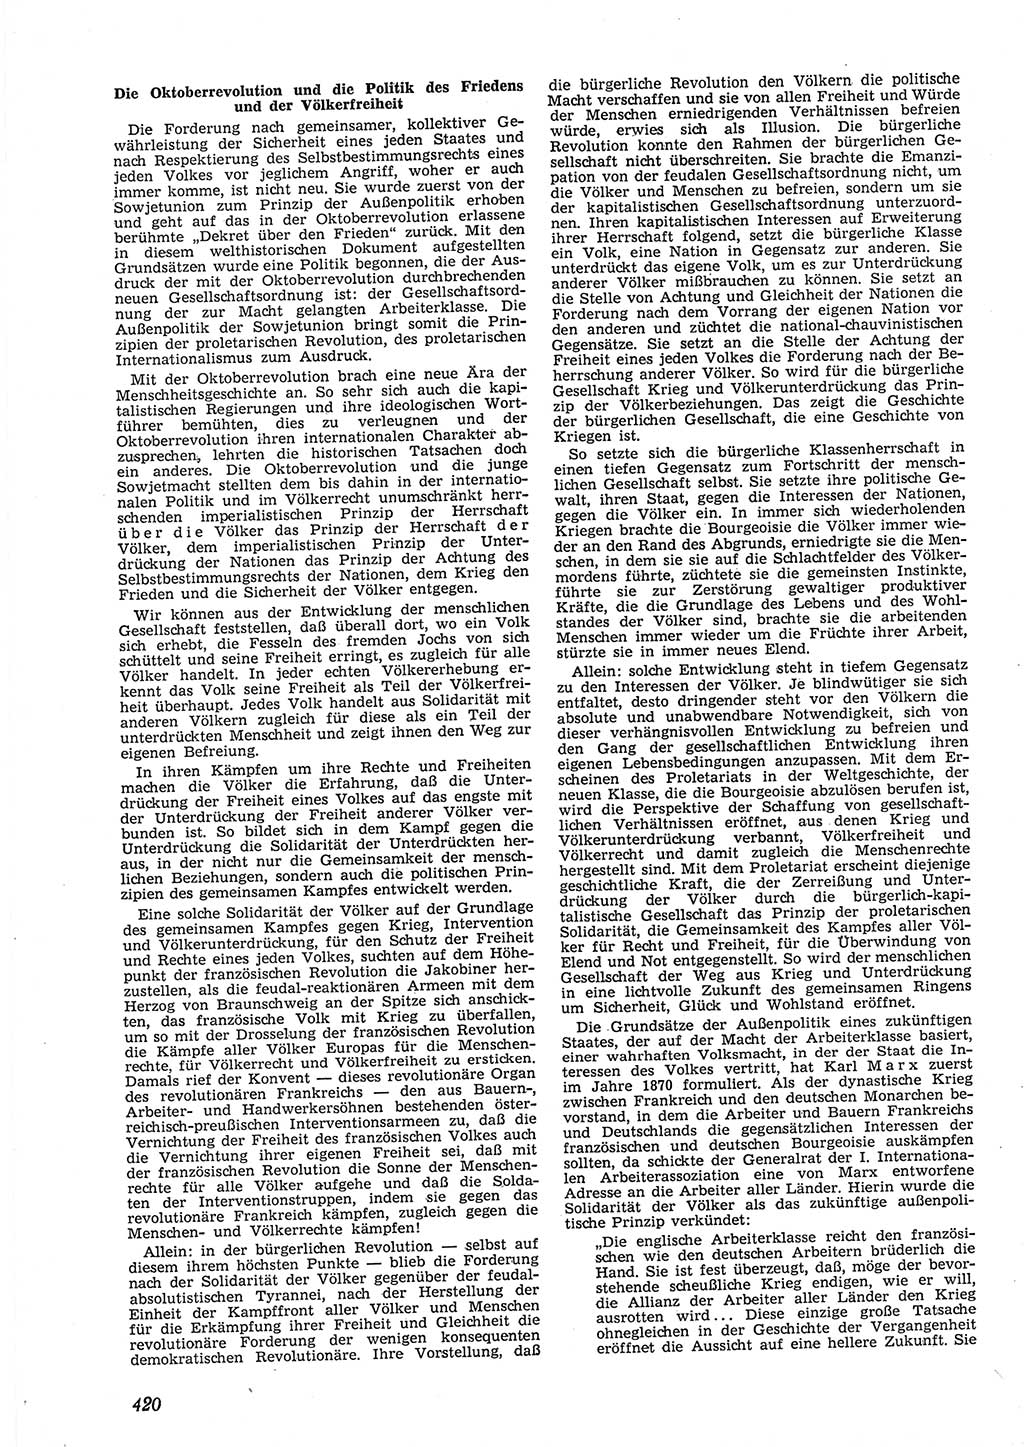 Neue Justiz (NJ), Zeitschrift für Recht und Rechtswissenschaft [Deutsche Demokratische Republik (DDR)], 9. Jahrgang 1955, Seite 420 (NJ DDR 1955, S. 420)